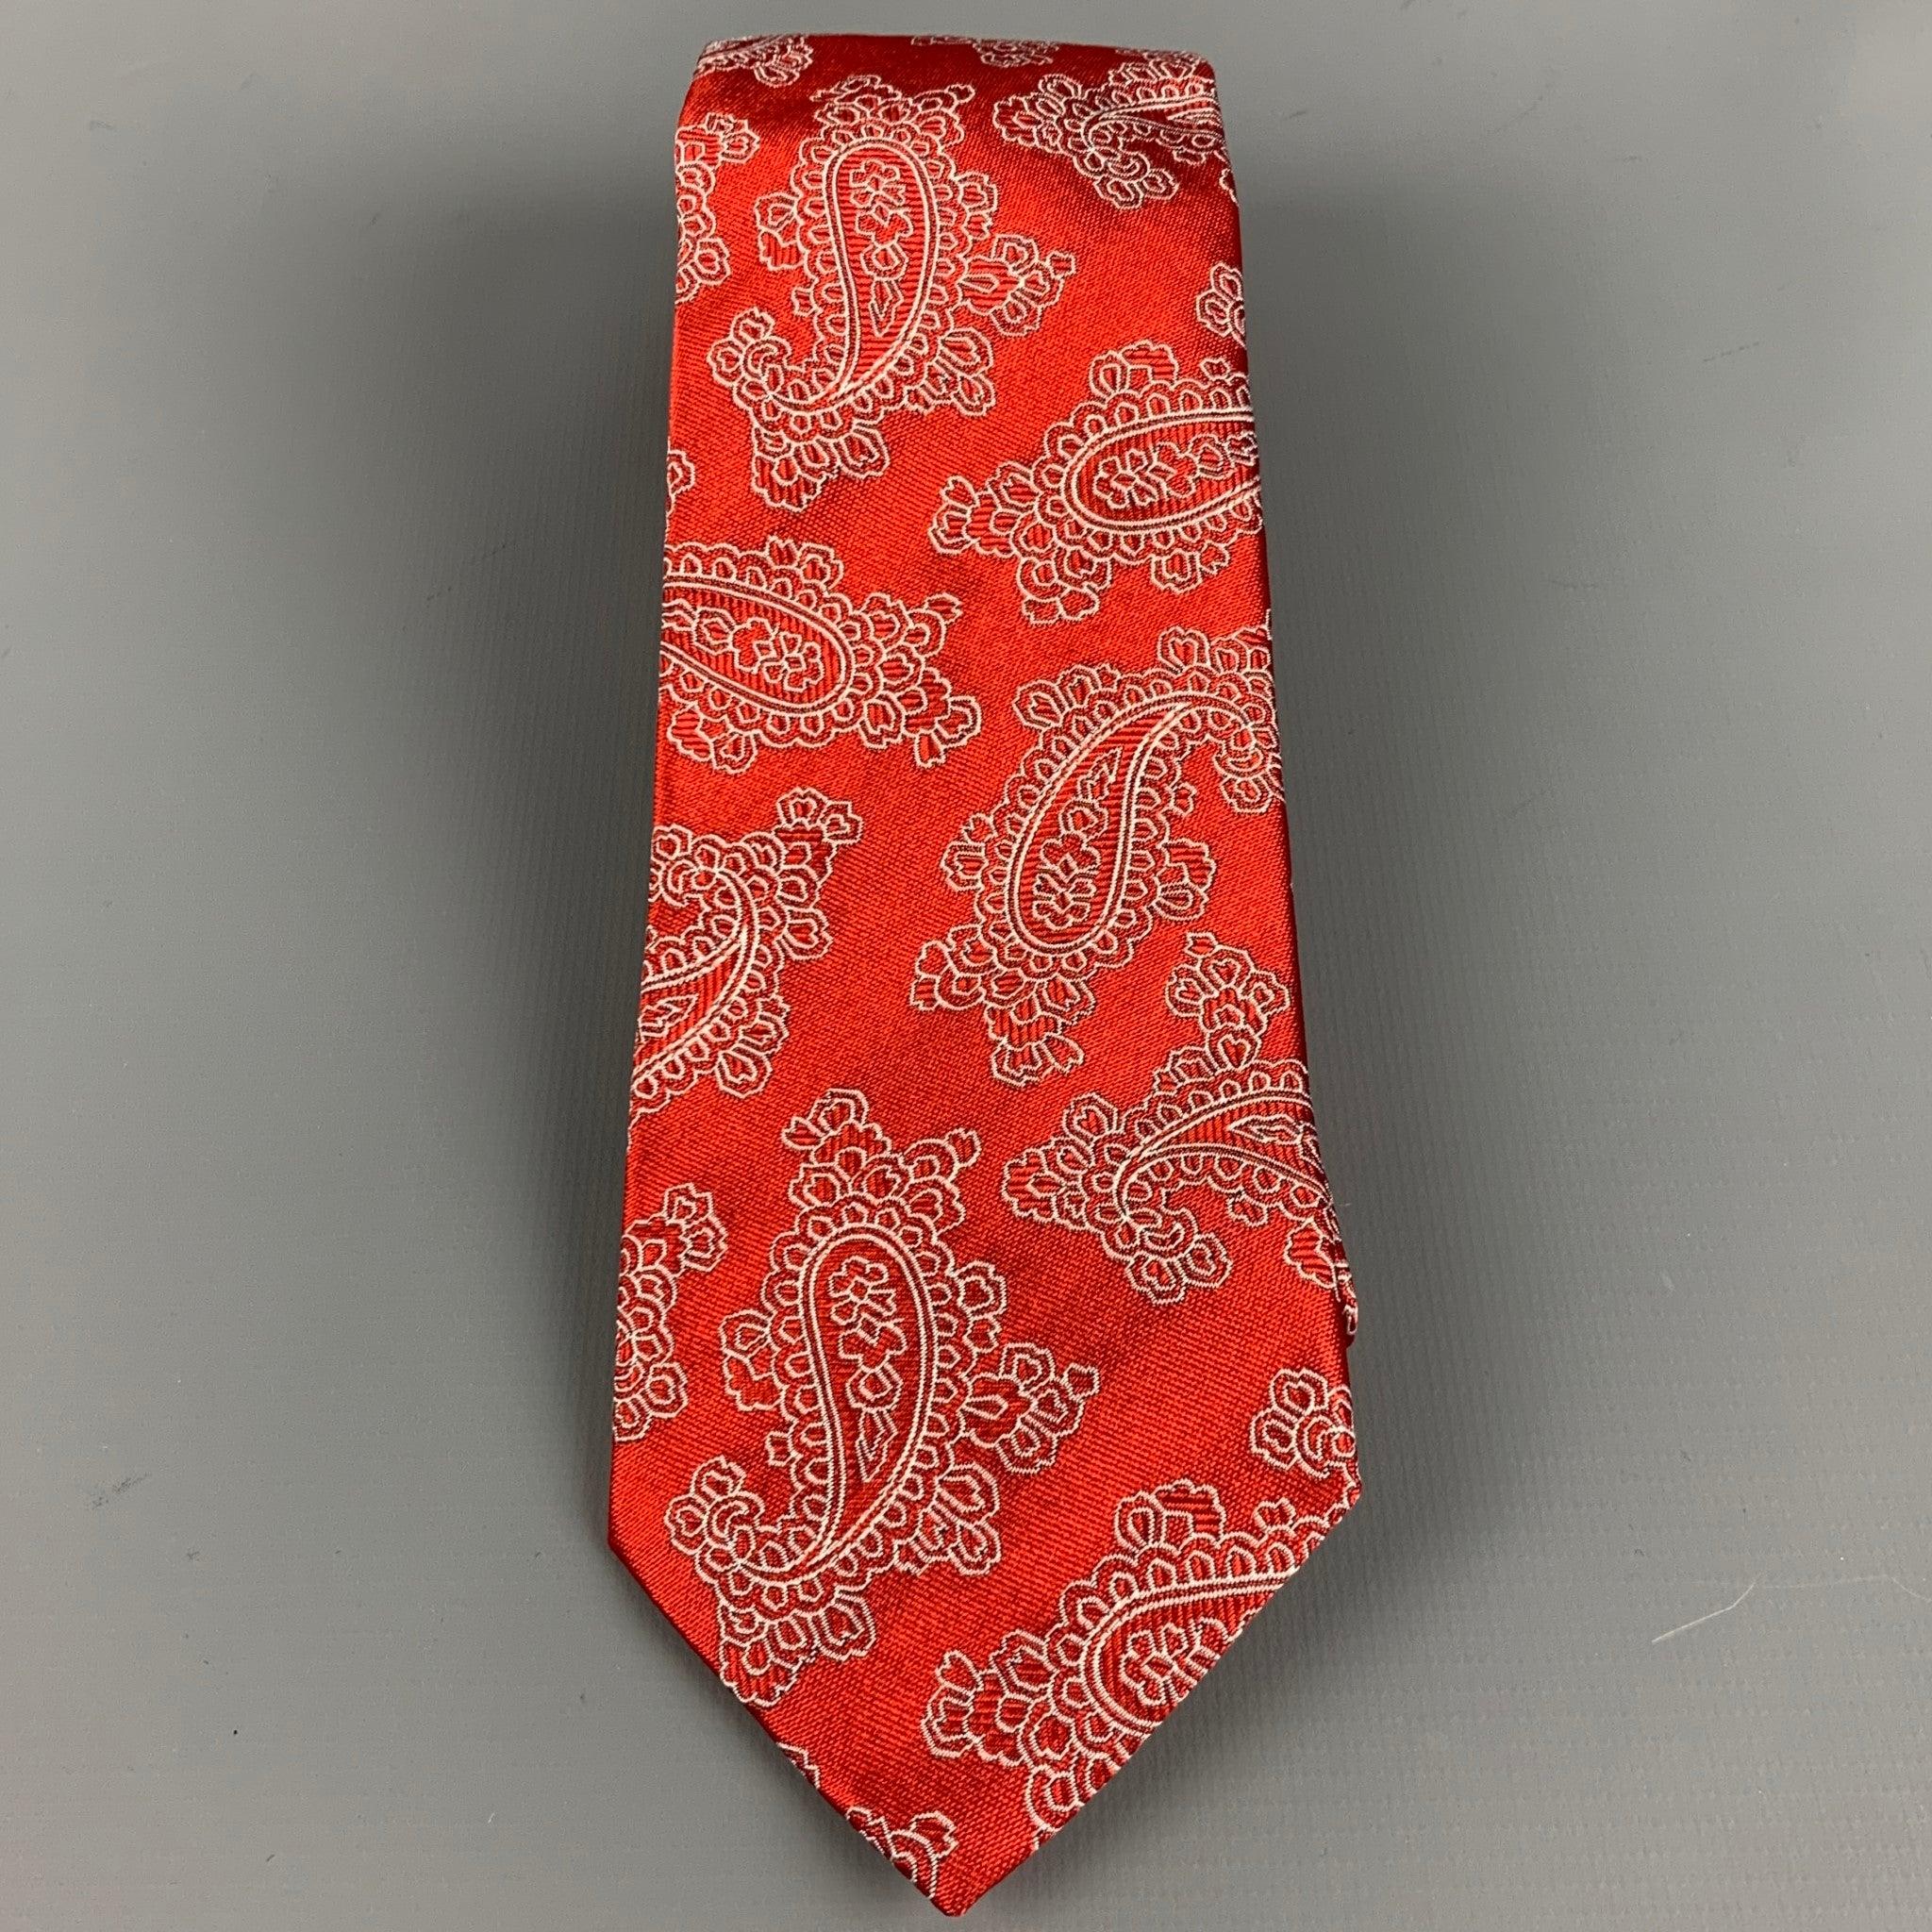 ETRO
Krawatte aus roter Seide mit weißem Jacquard-Paisleymuster. Made in Italy. sehr guter gebrauchter Zustand. Geringfügige Mängel. 

Abmessungen: 
  Breite: 3 Zoll Länge: 58 Zoll 
  
  
 
Referenz: 127302
Kategorie: Krawatte
Mehr Details
   